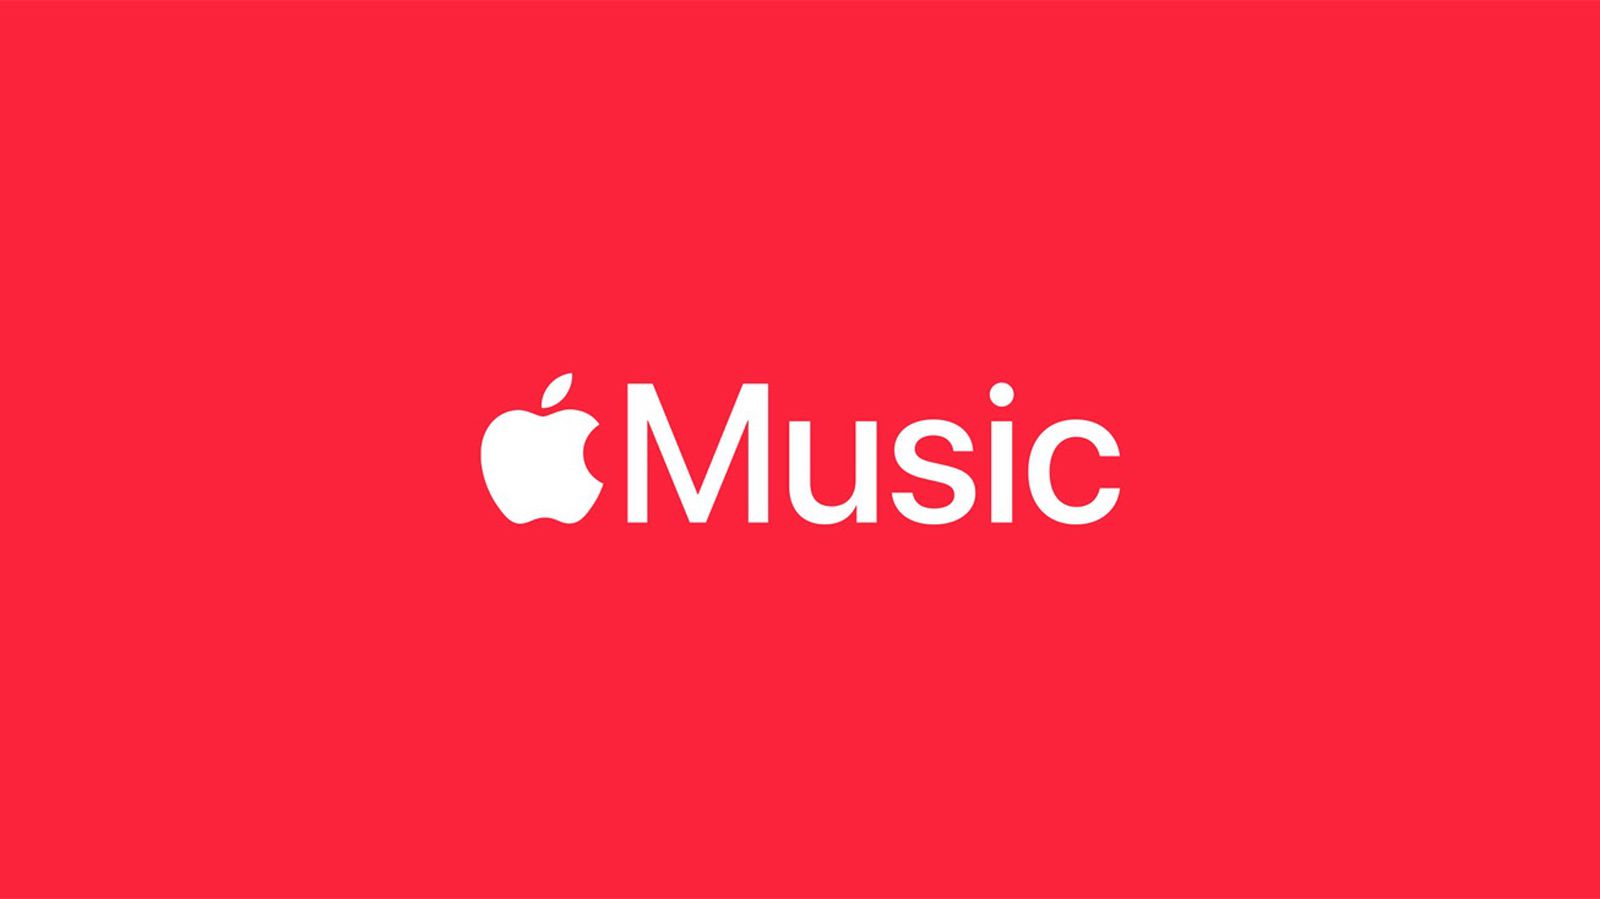 Apple Song Classes estreia com lançamentos exclusivos de áudio e vídeo ao vivo